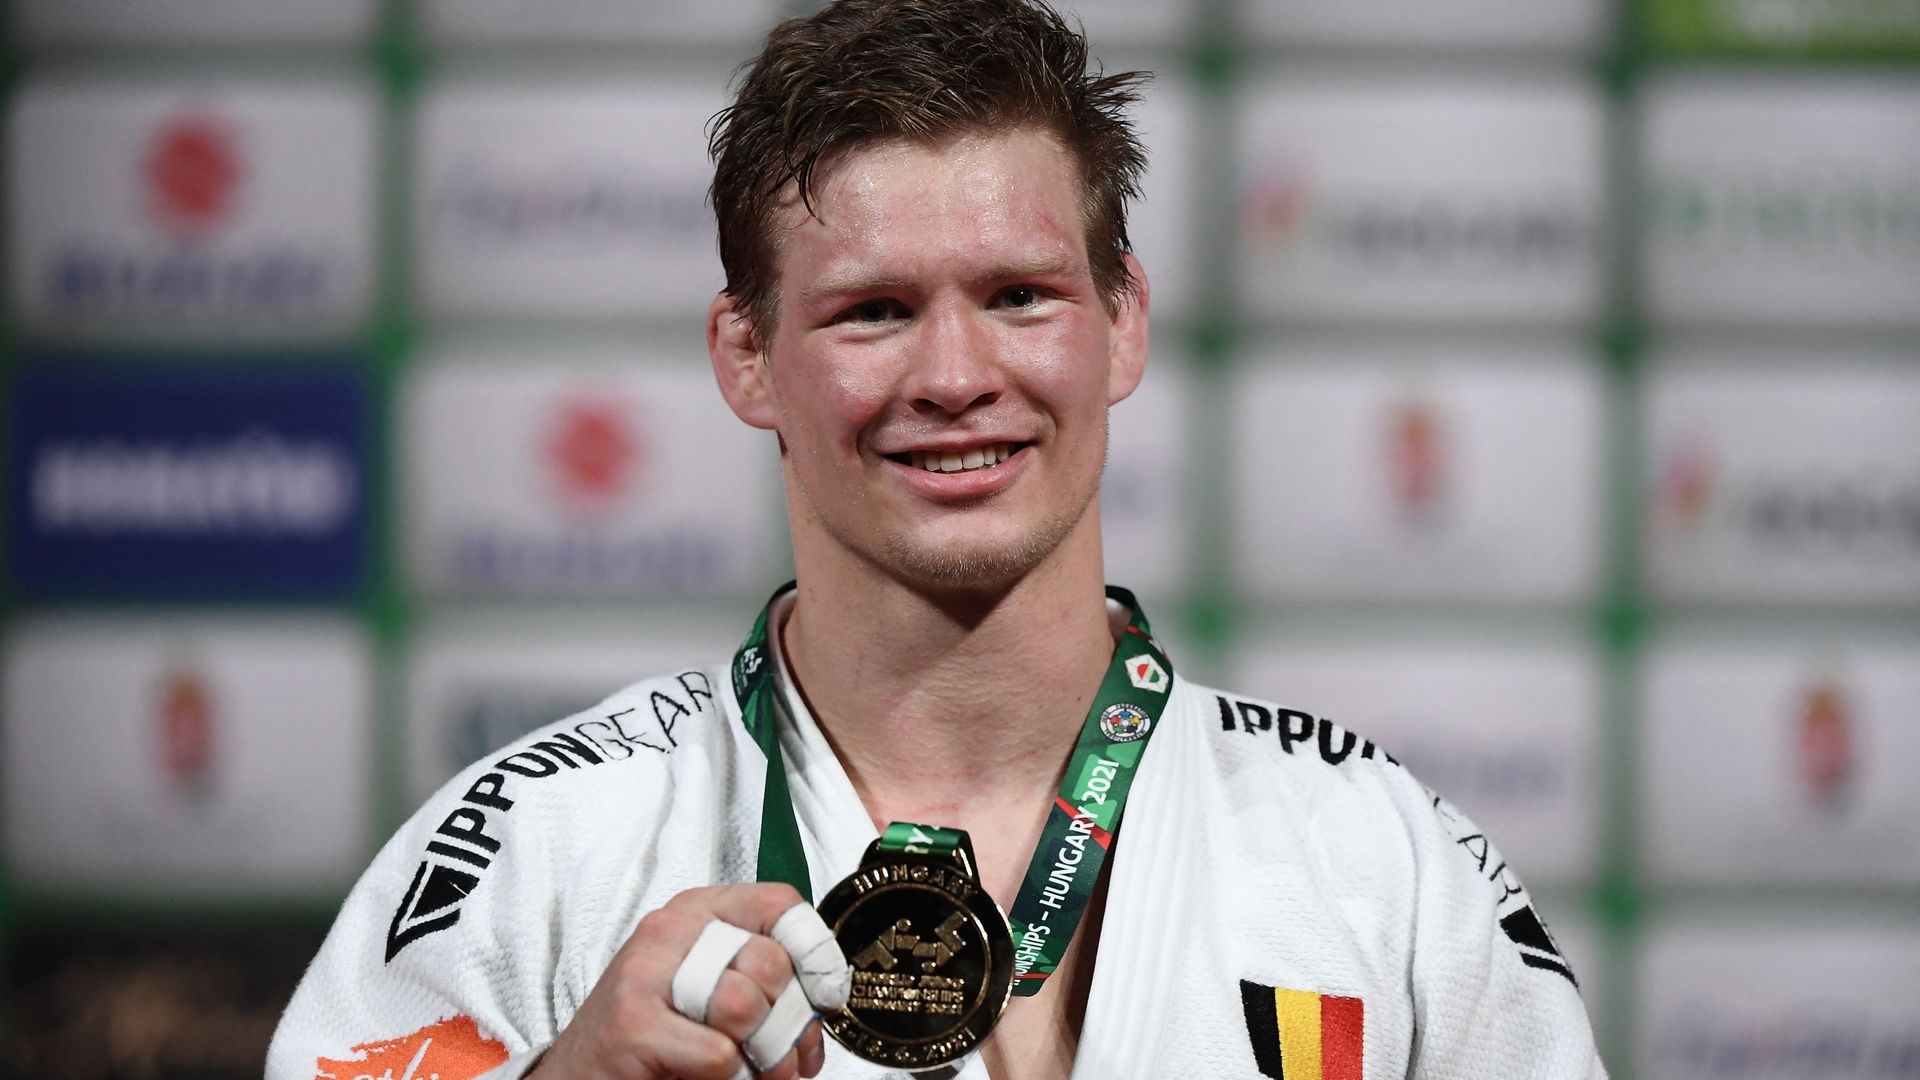 "Les championnats du monde seront très spéciaux pour moi parce que j’y serai pour y défendre mon titre", déclare Matthias Casse qui est devenu champion du monde (-81kg) en juin dernier à Budapest en Hongrie.